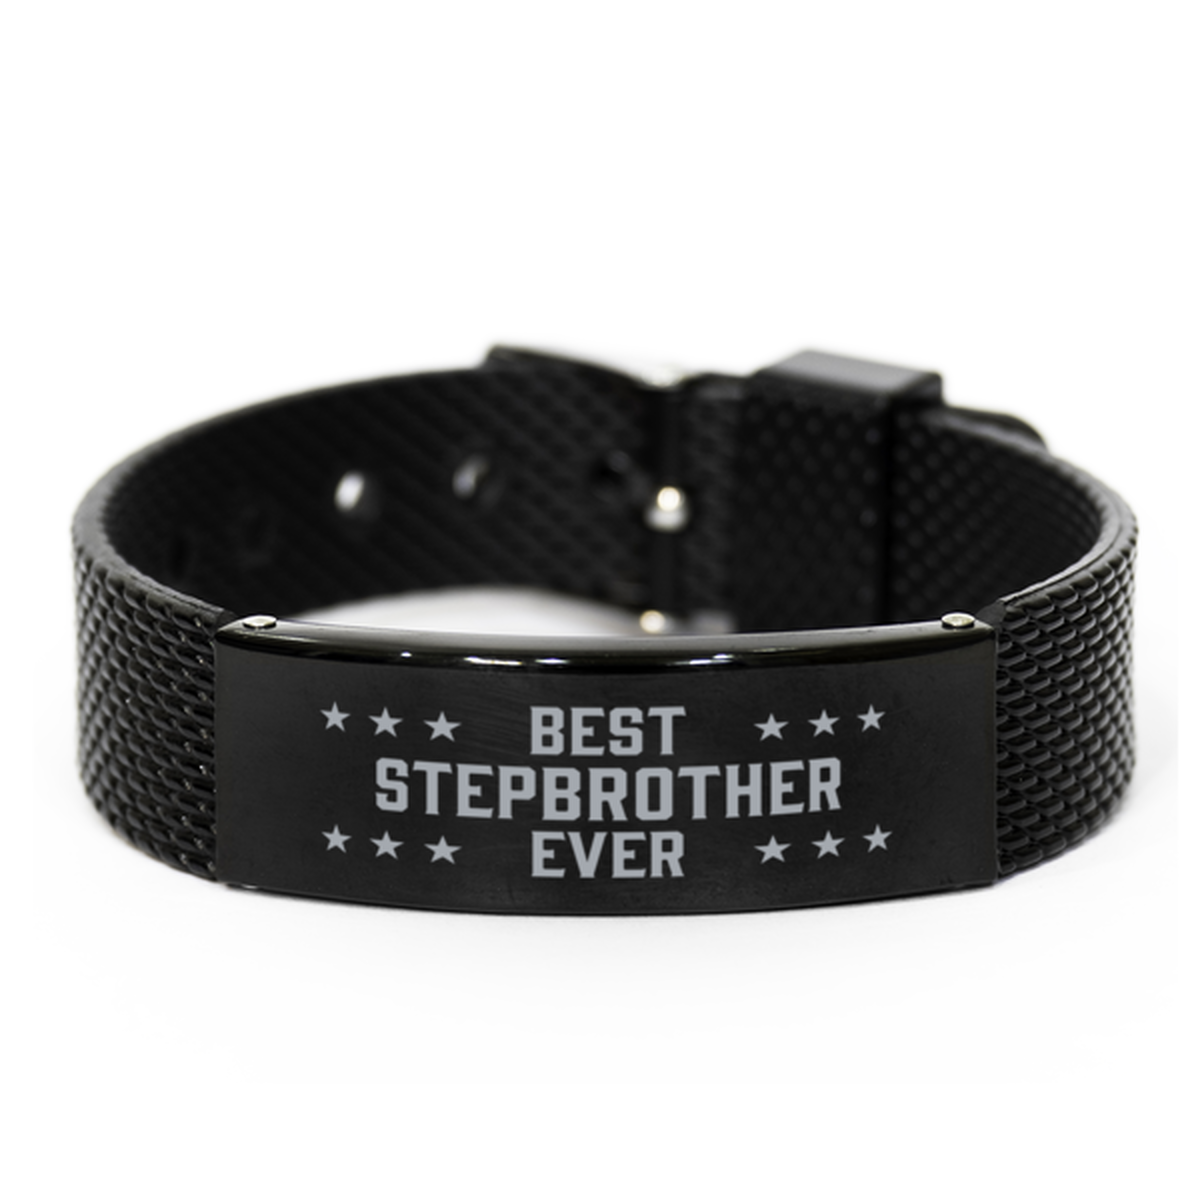 Best Stepbrother Ever Stepbrother Gifts, Gag Engraved Bracelet For Stepbrother, Best Family Gifts For Men